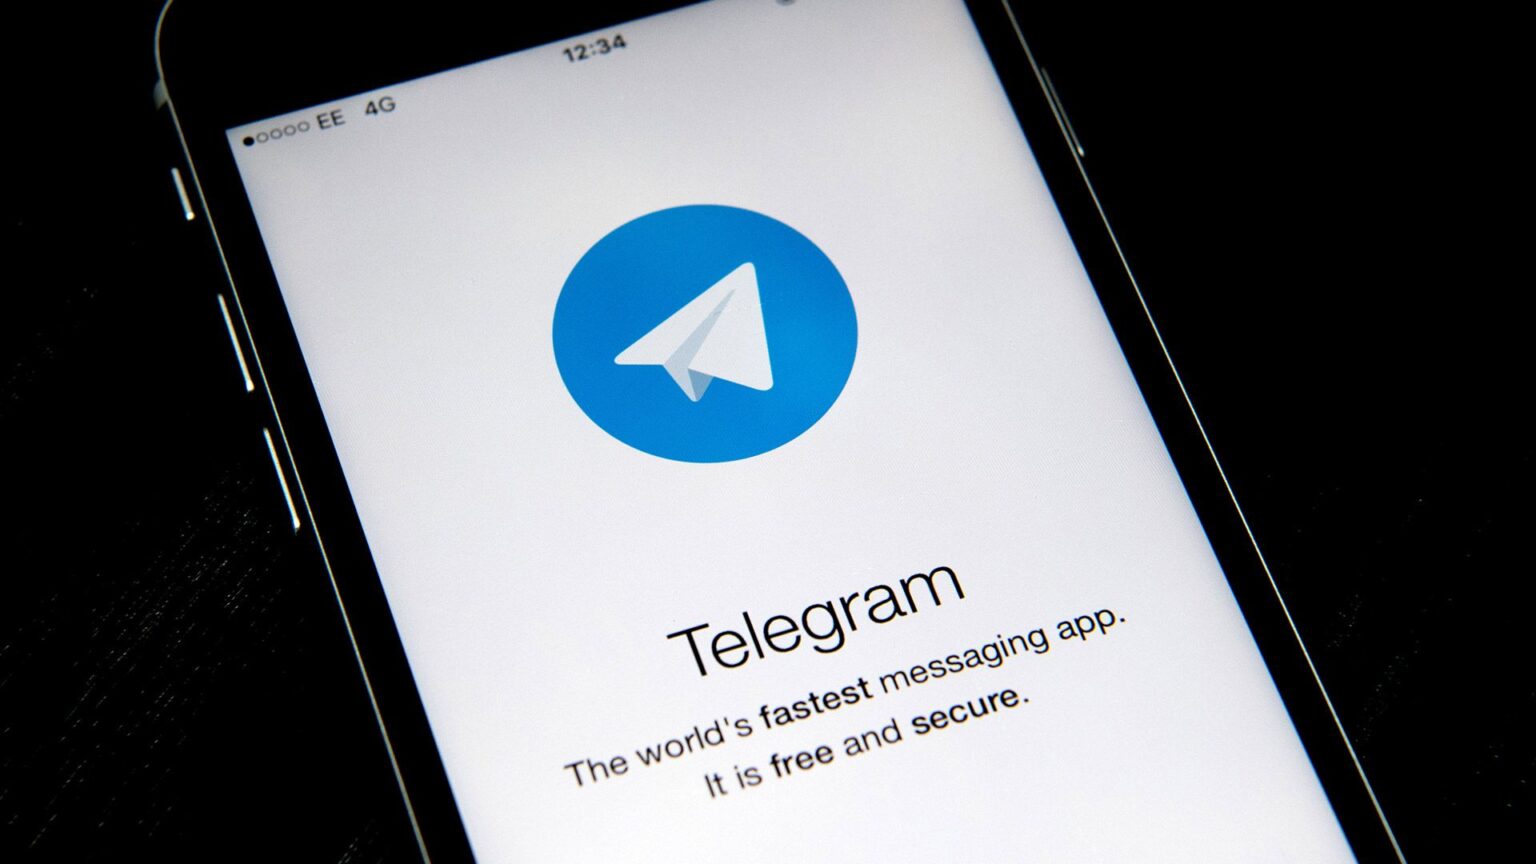 Despídete de WhatsApp y sus mentiras. Checa estos grupos de Telegram y sácale ventaja a la mejor app del internet.